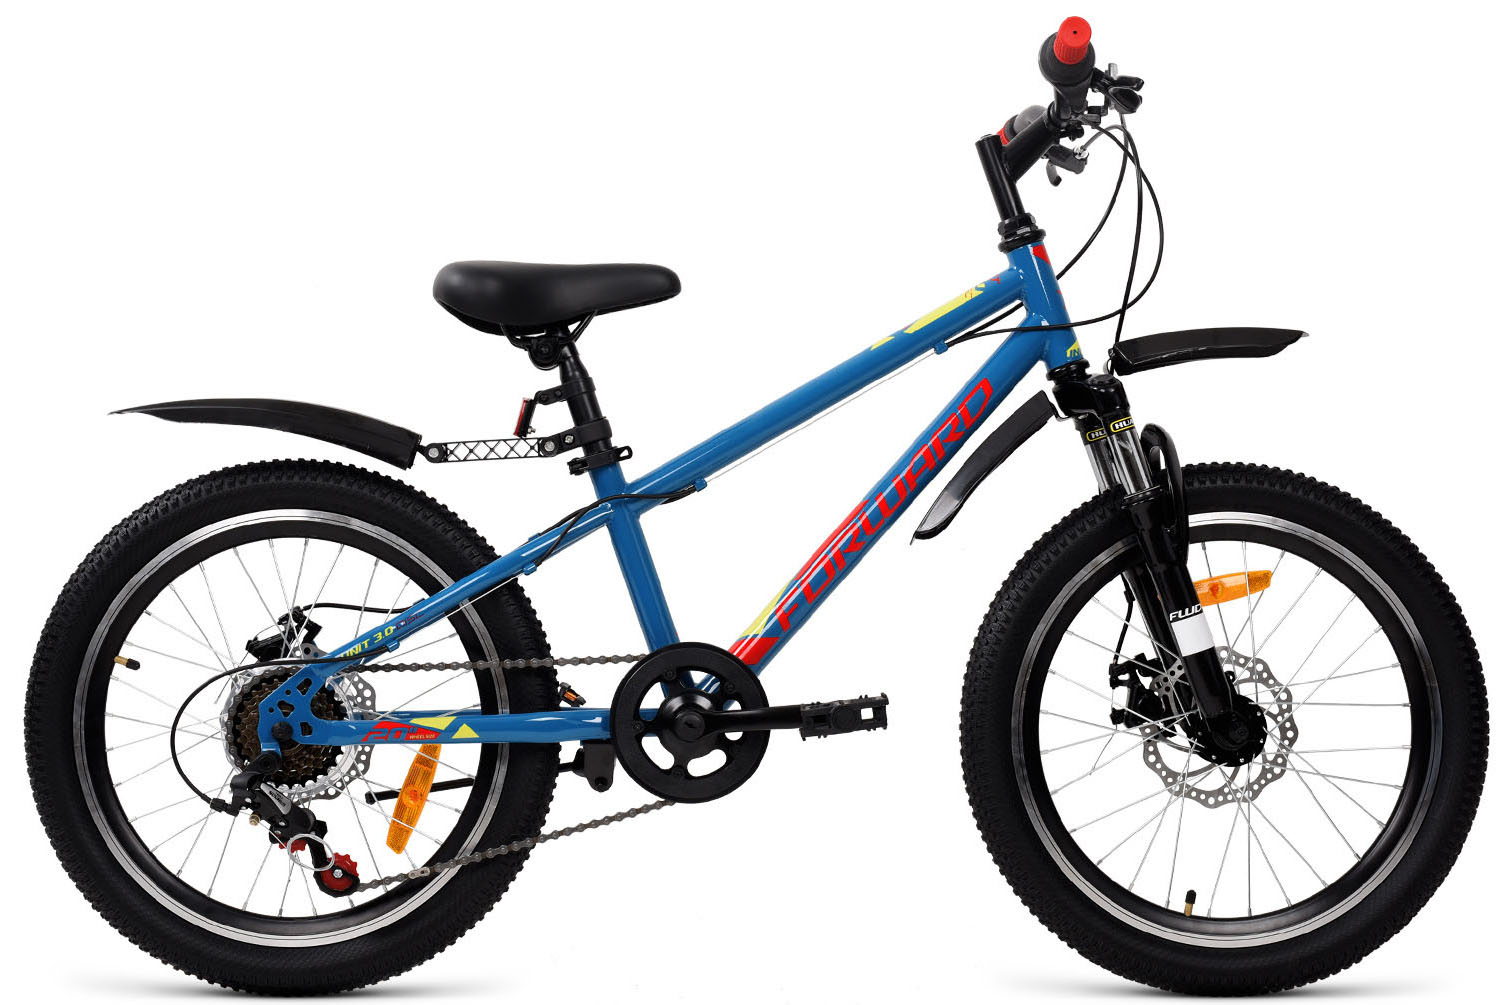  Отзывы о Детском велосипеде Forward Unit 20 3.0 disc 2019